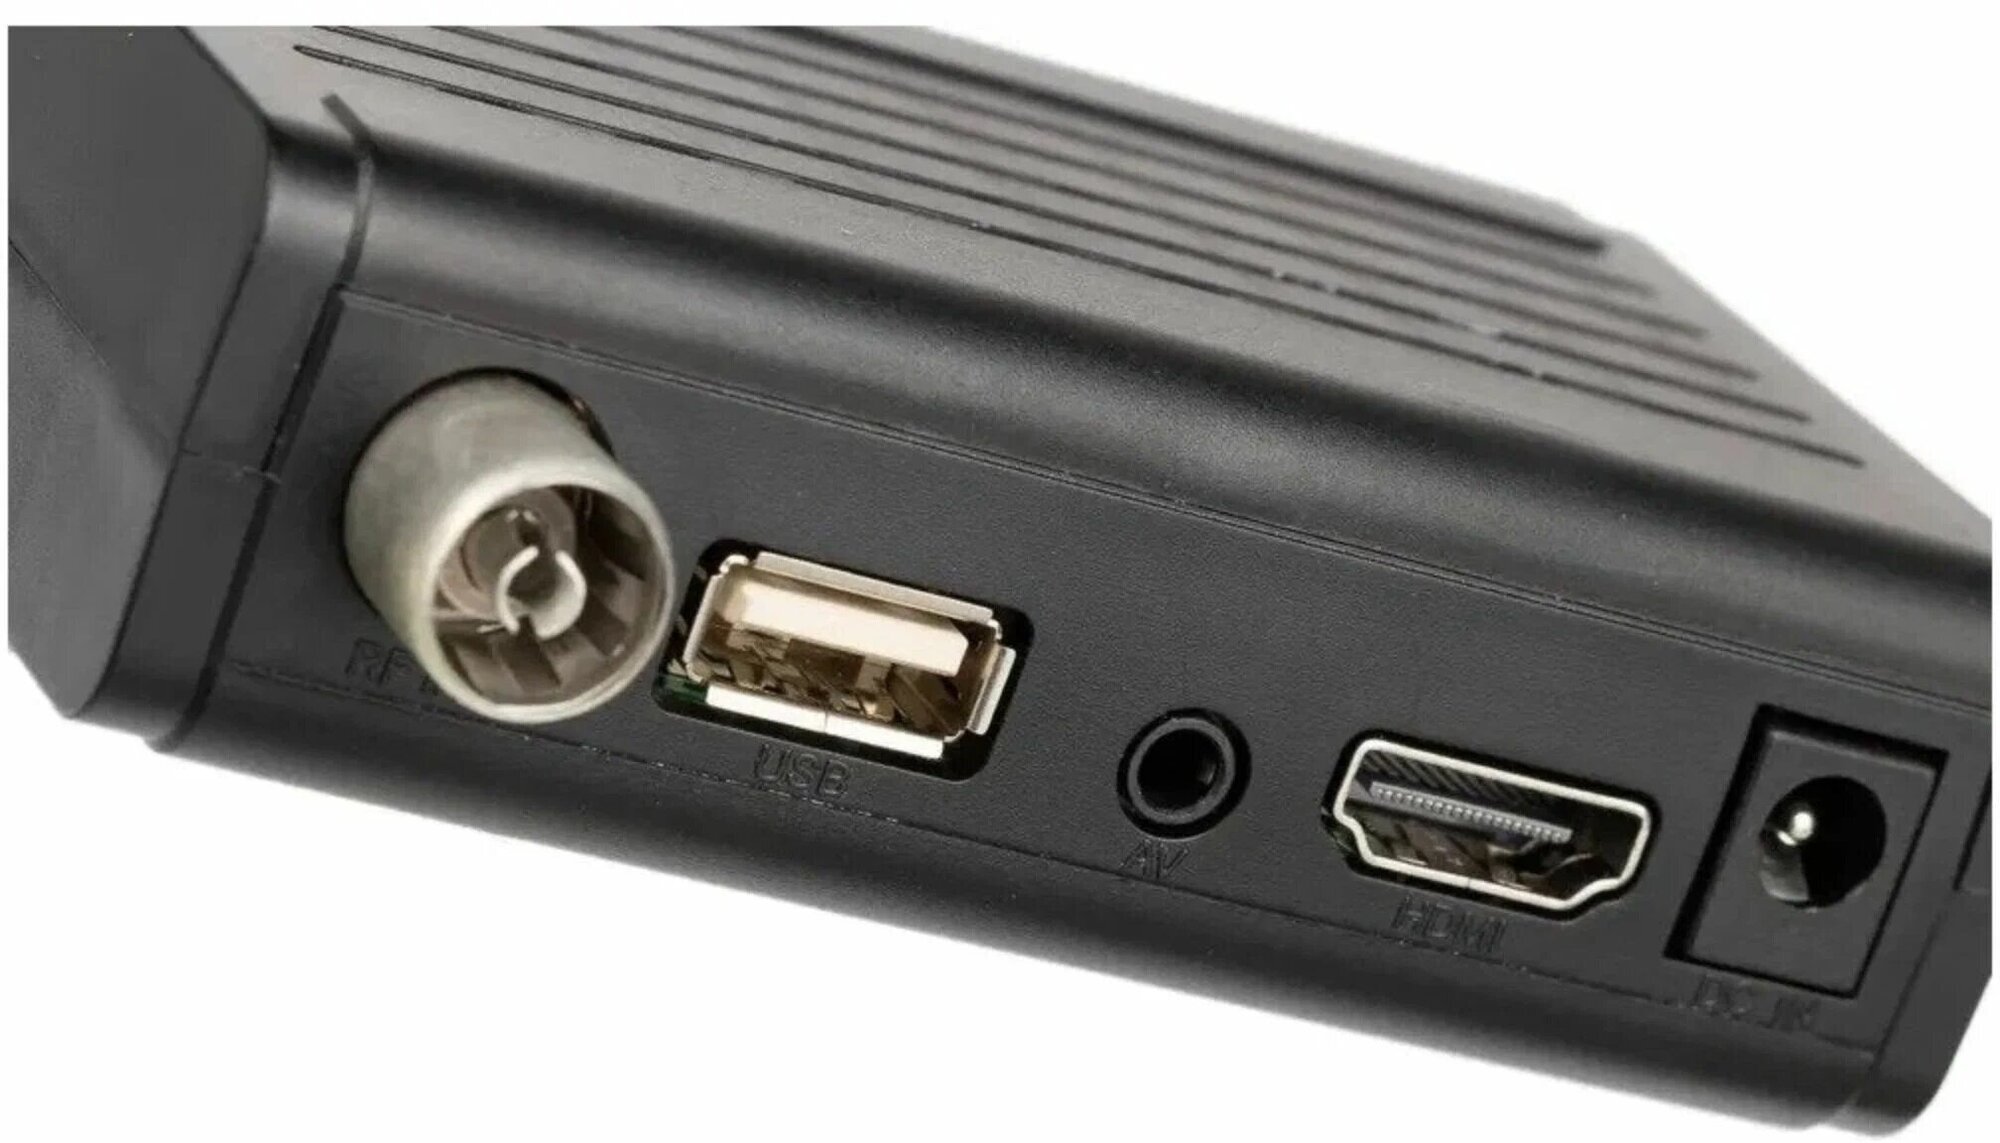 Цифровой телевизионный DVB-T2 ресивер BBK SMP025HDT2 черный, HDMI выход, USB флеш, пульт ДУ